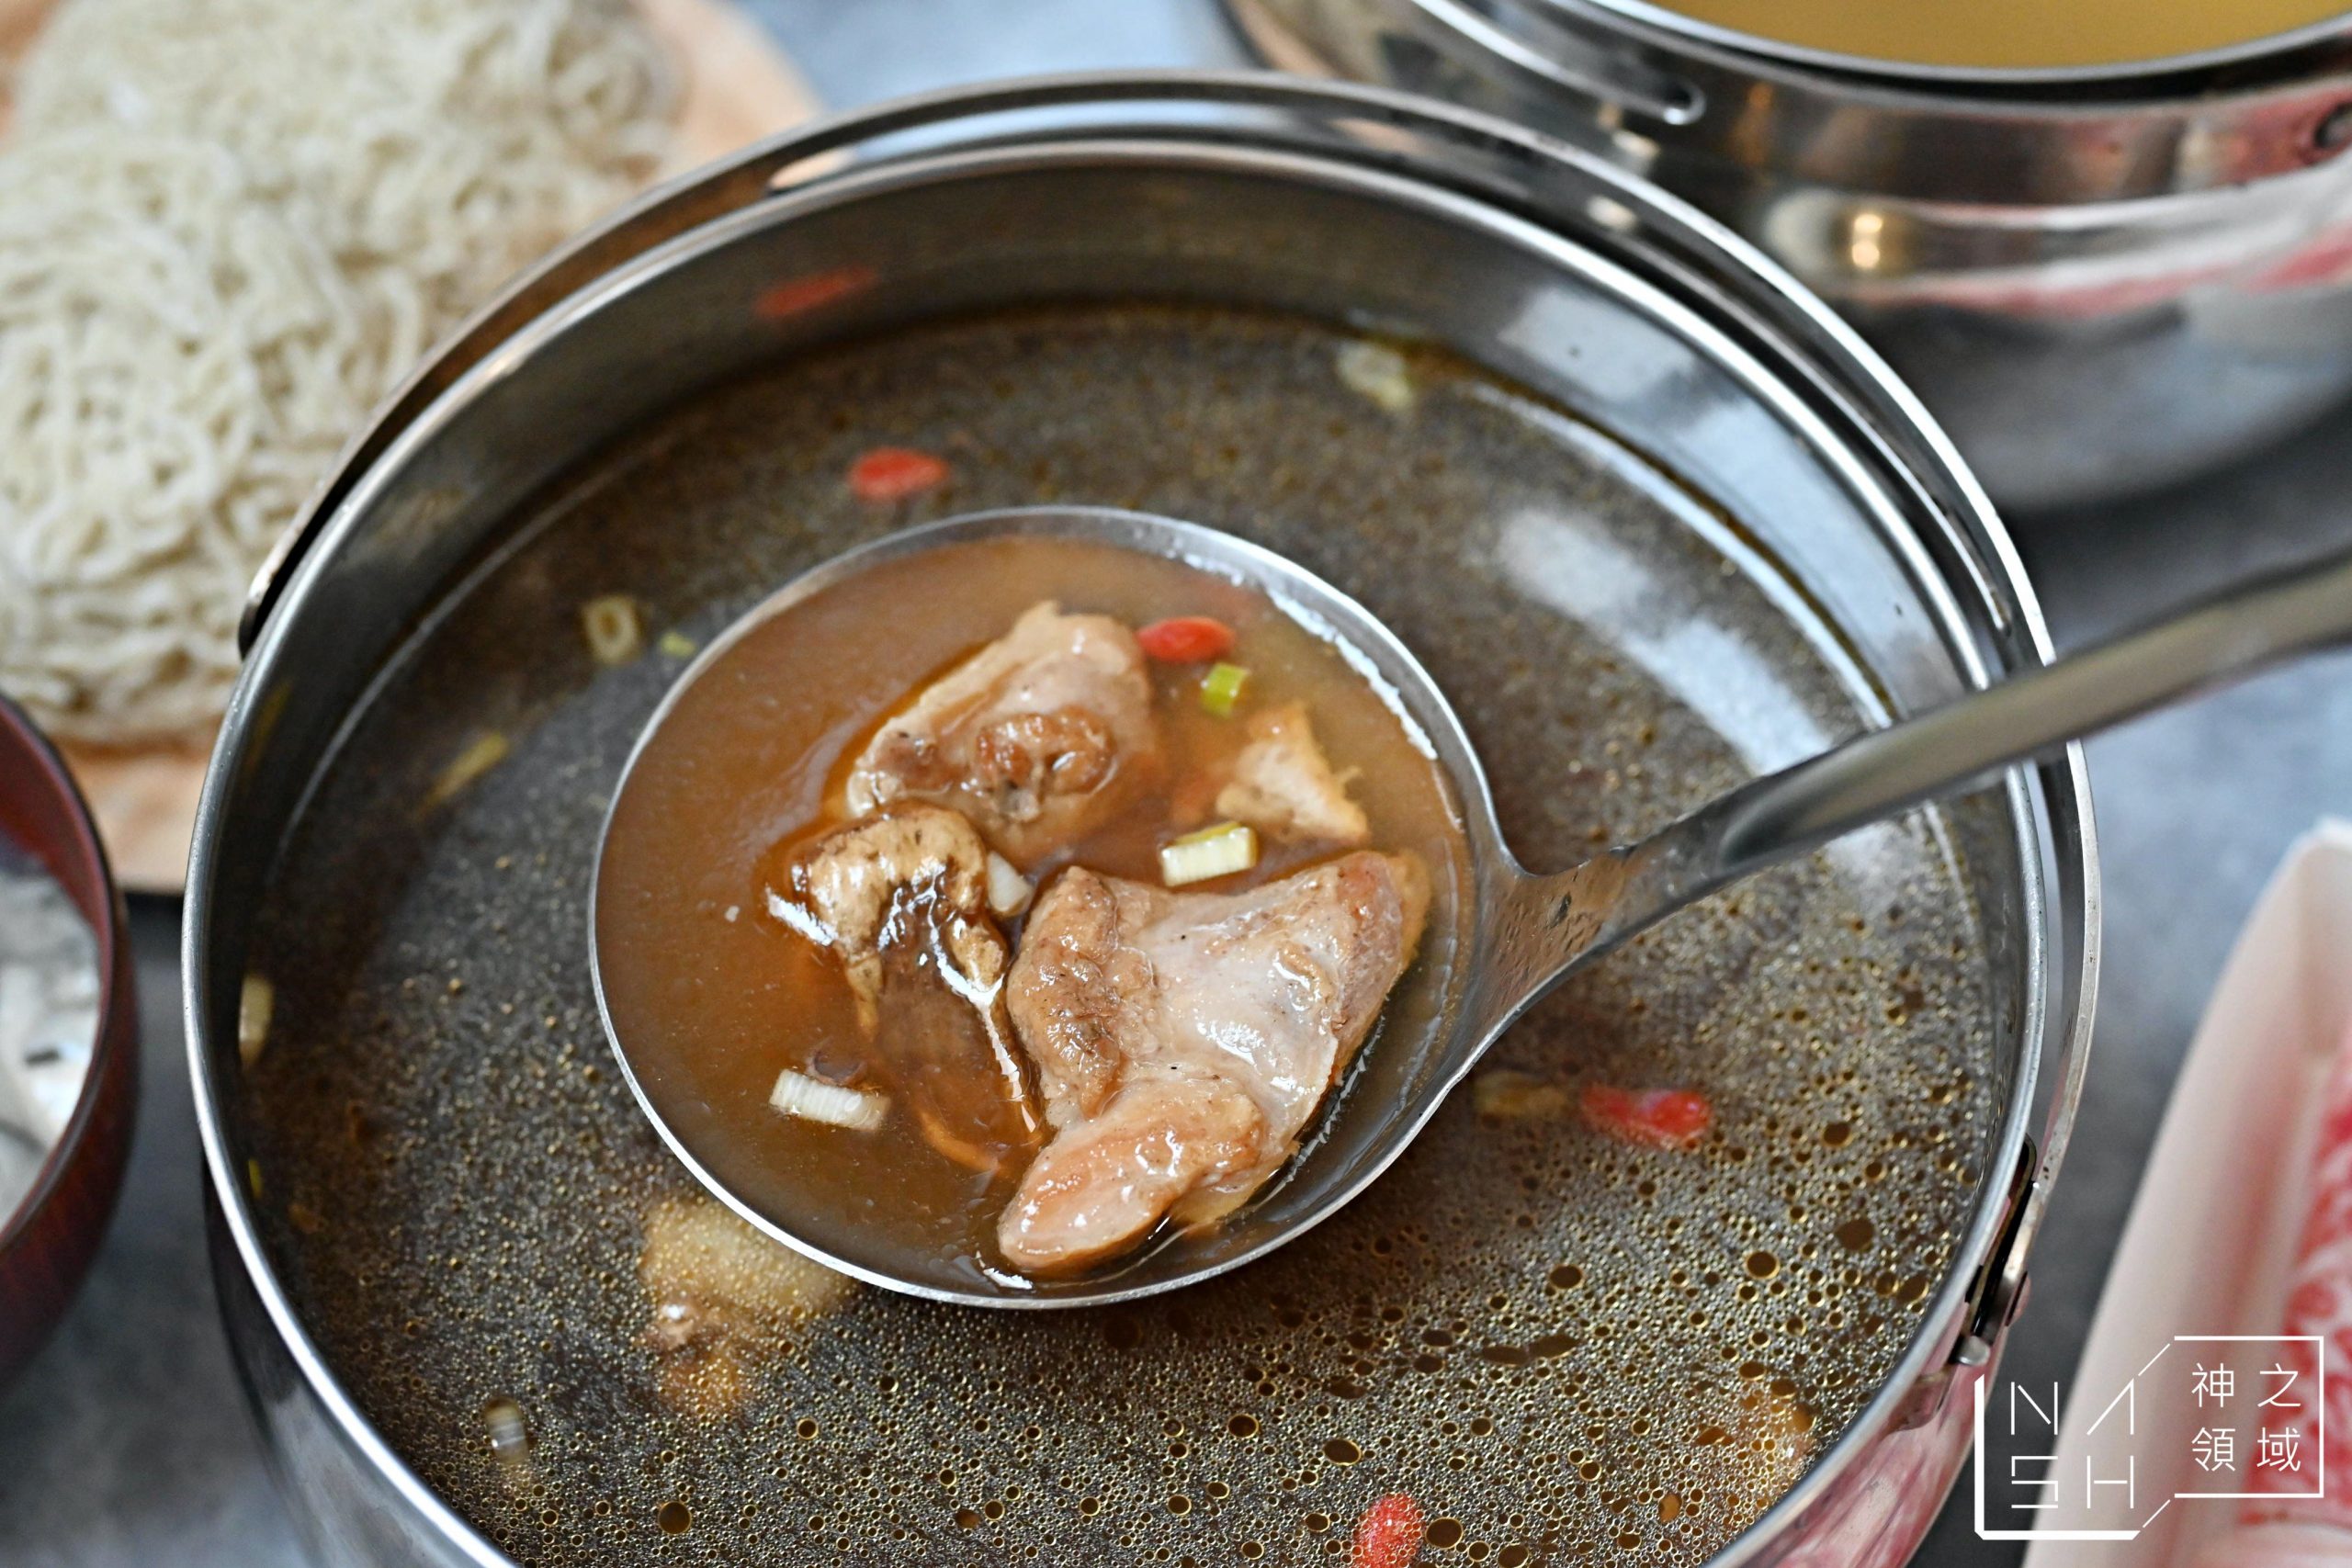 肉老大頂級肉品涮涮鍋